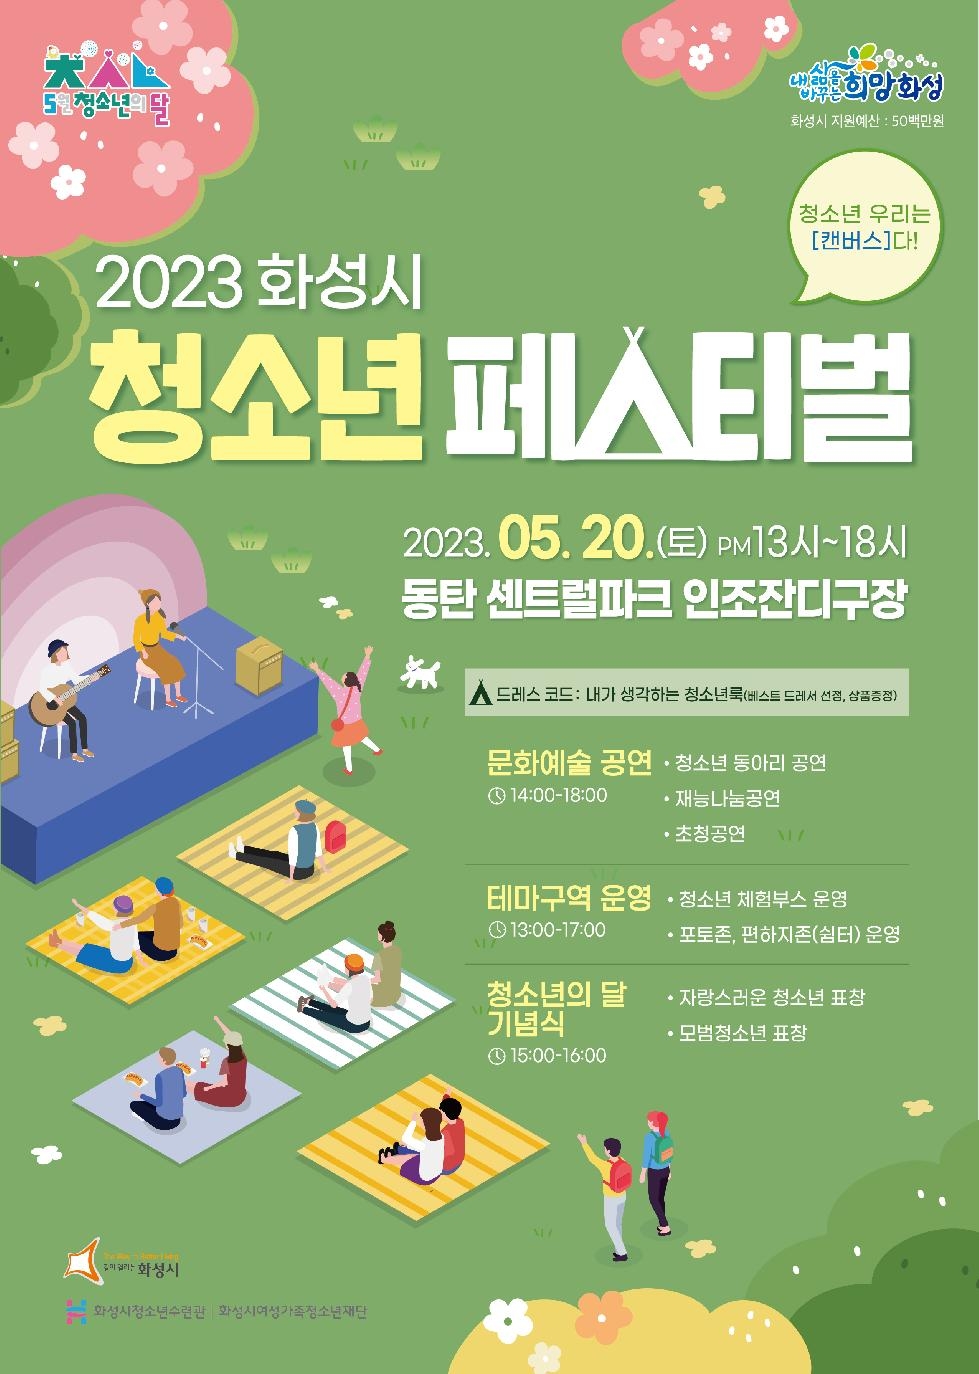 화성시 청소년들을 위한 [2023 화성시청소년페스티벌] 개최